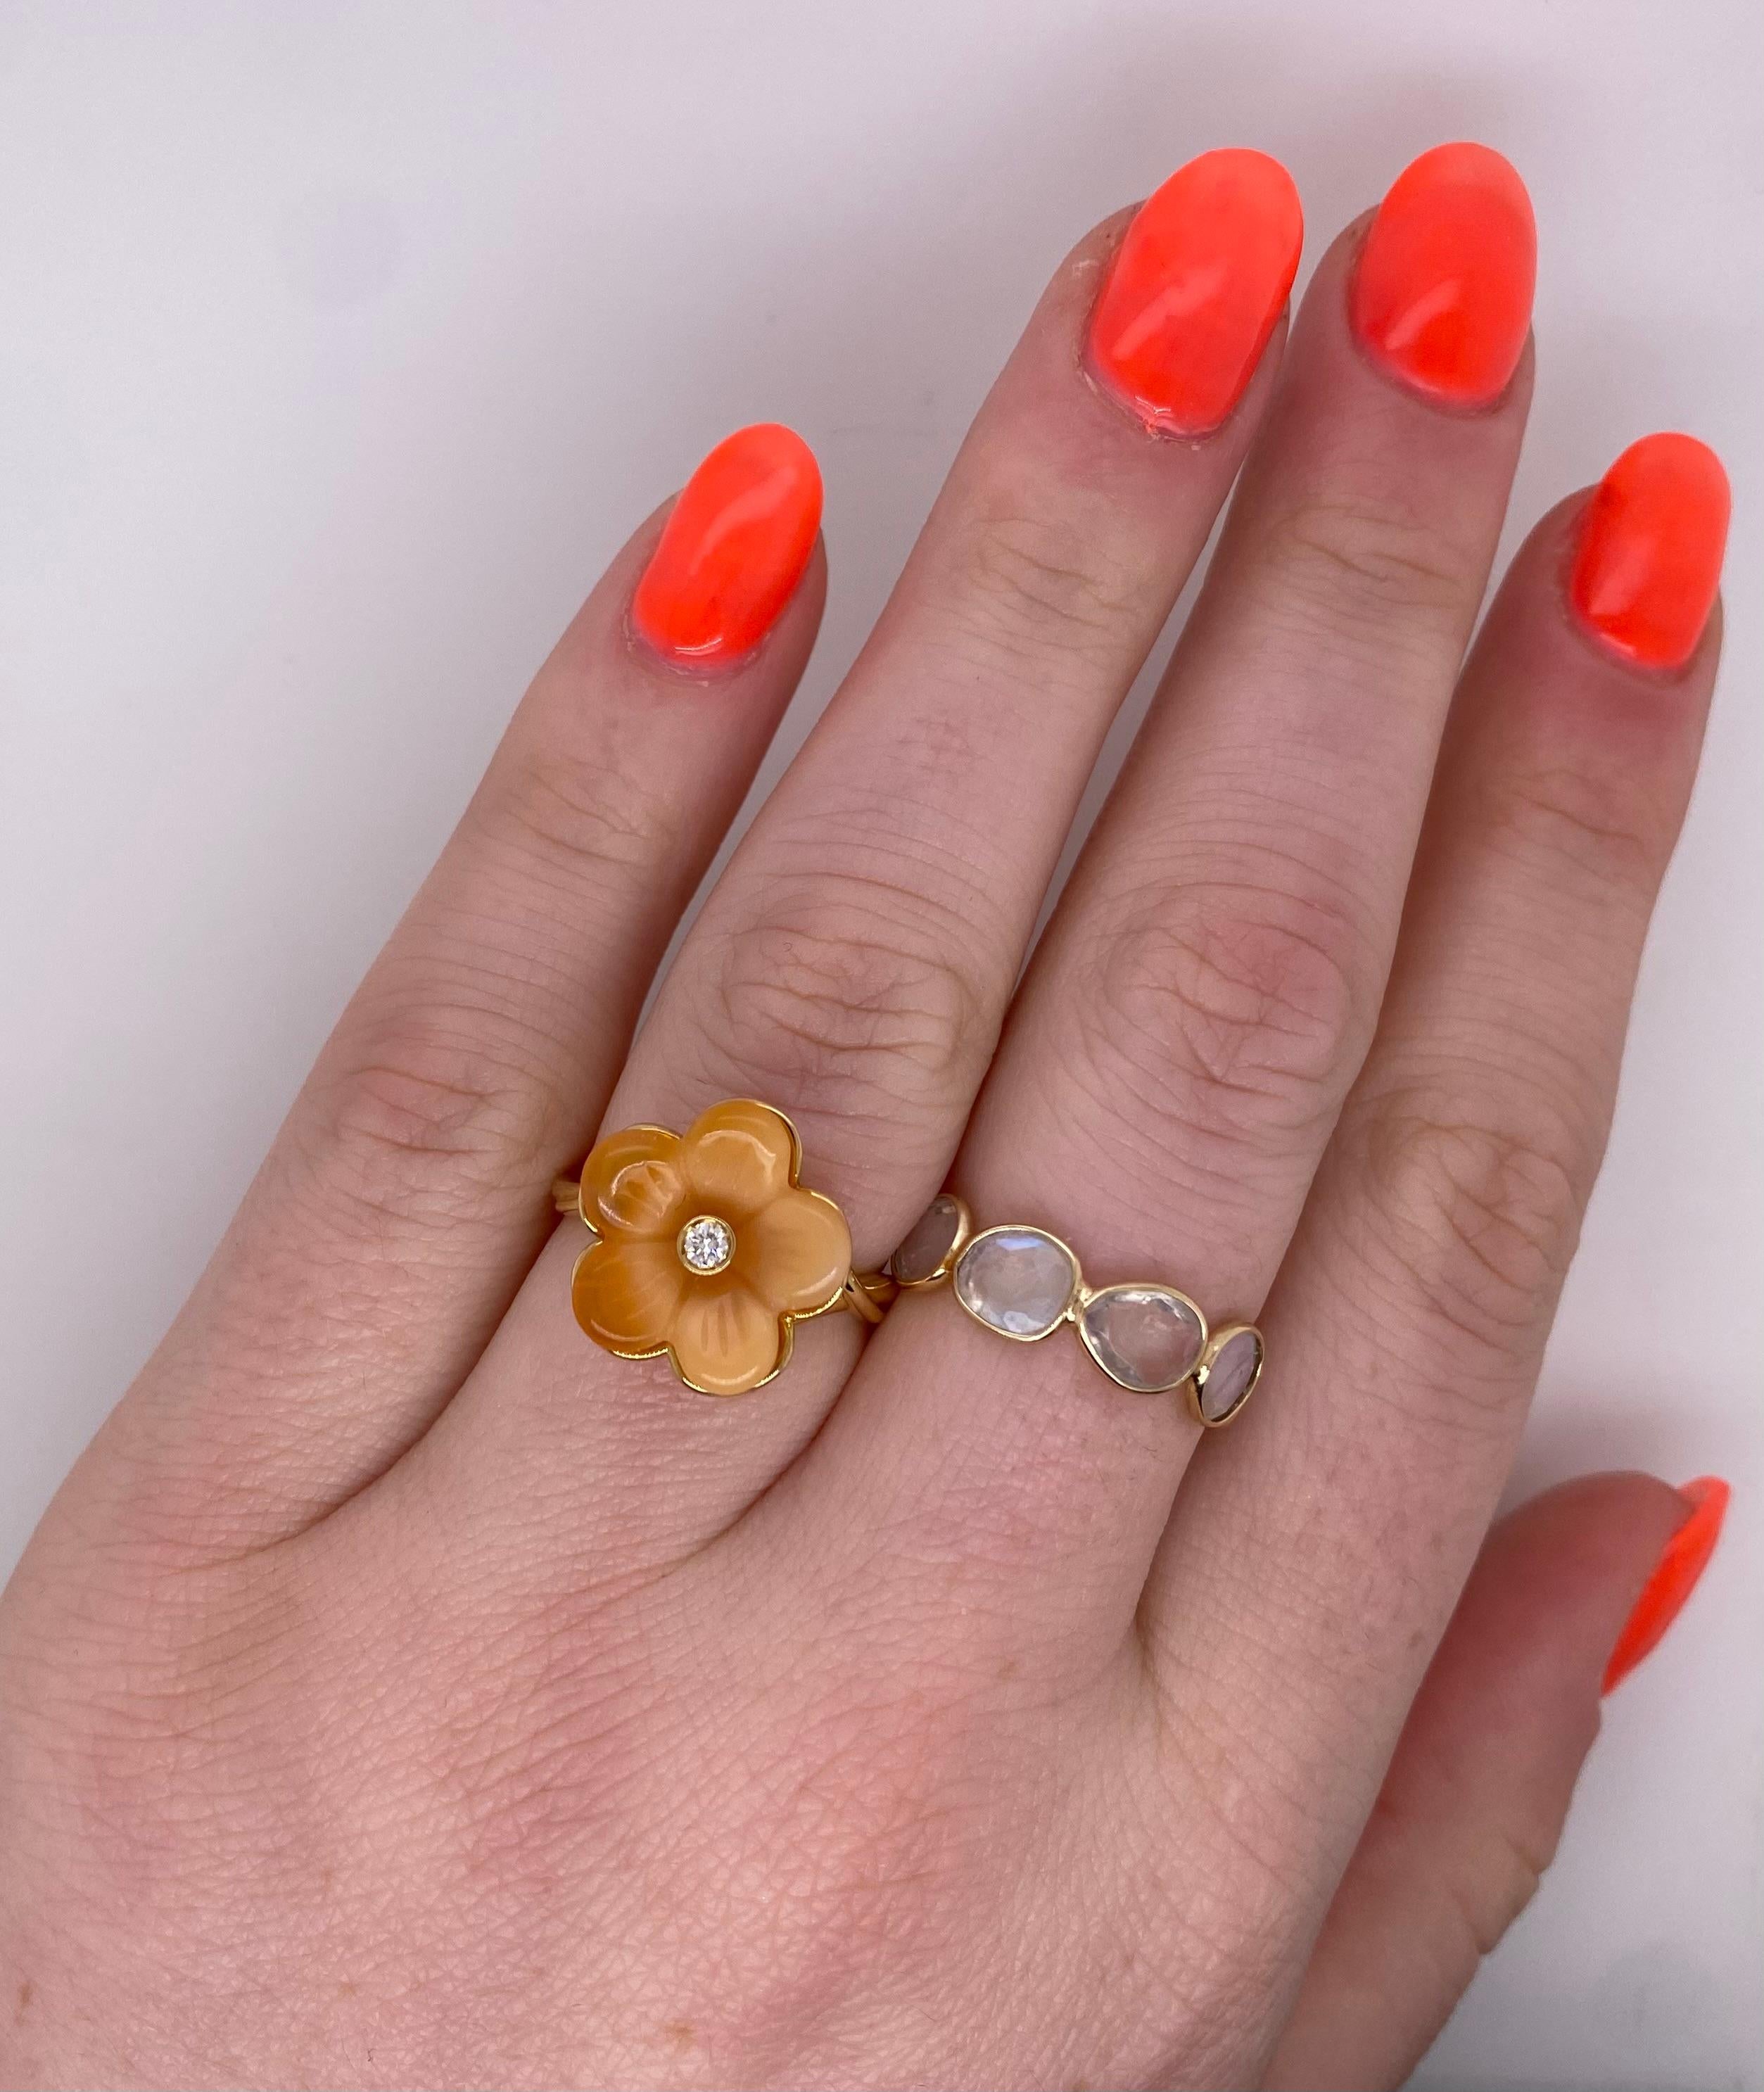 Women's Ferragamo 18 Karat Yellow Fire Opal Flower Diamond Ring Size 6.75 For Sale